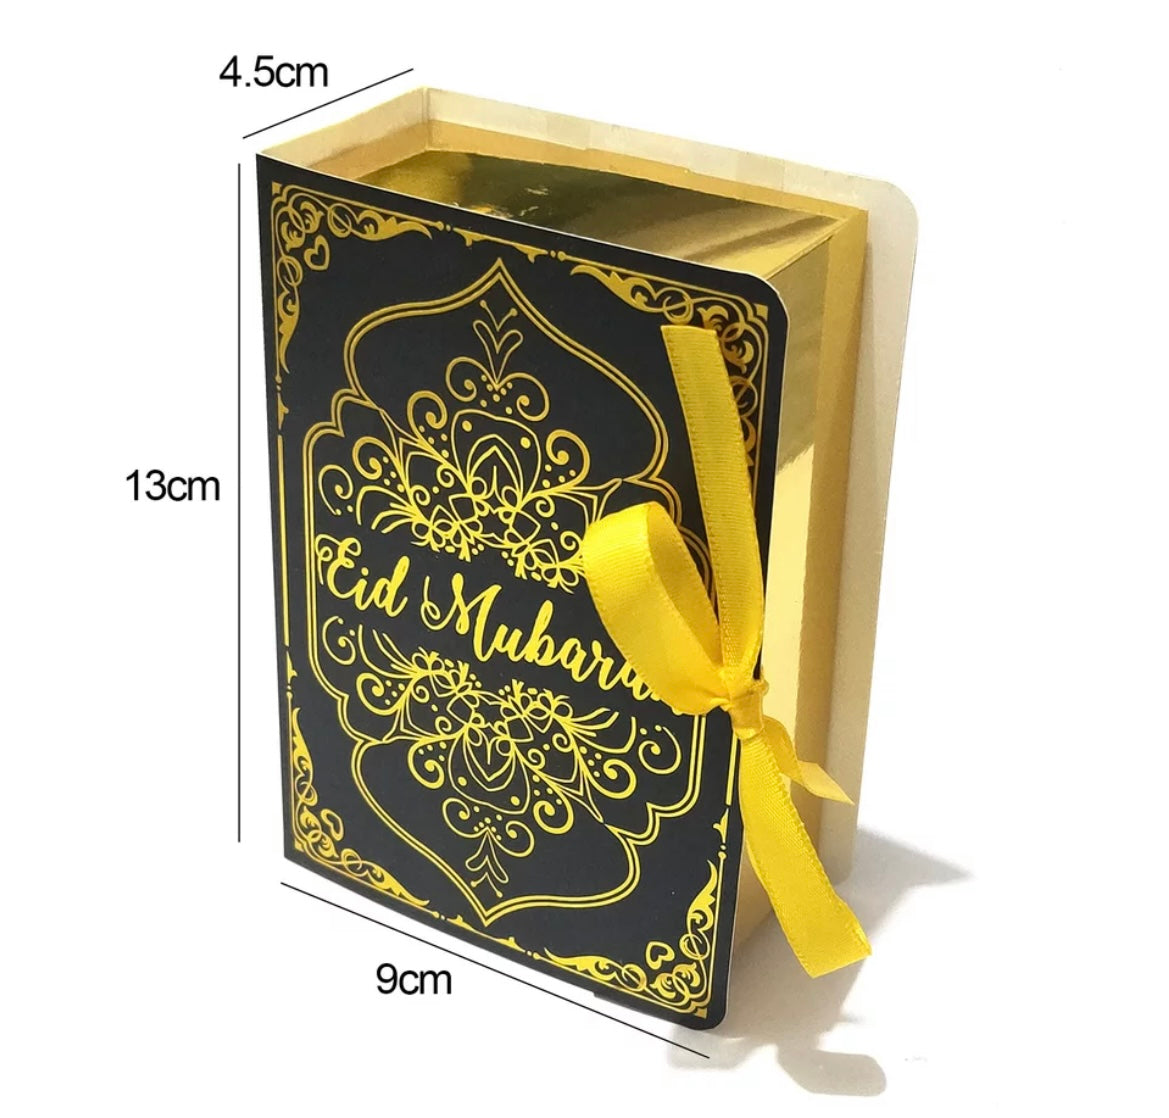 Eid Mubarak Book Shaped Box